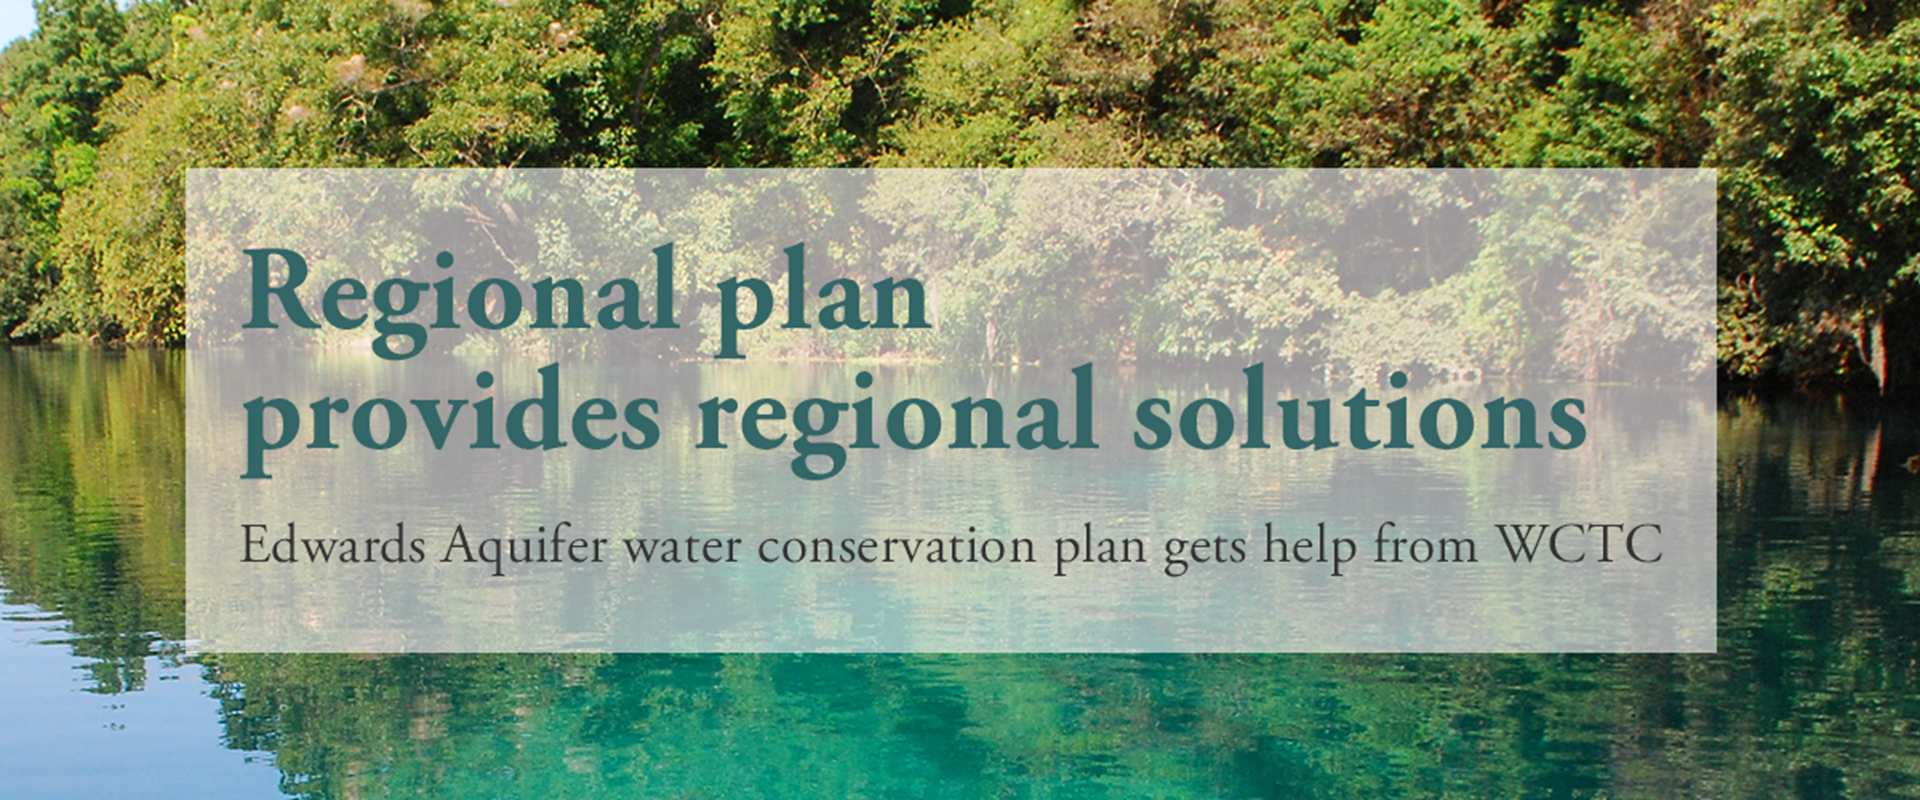 Regional plan provides regional solutions